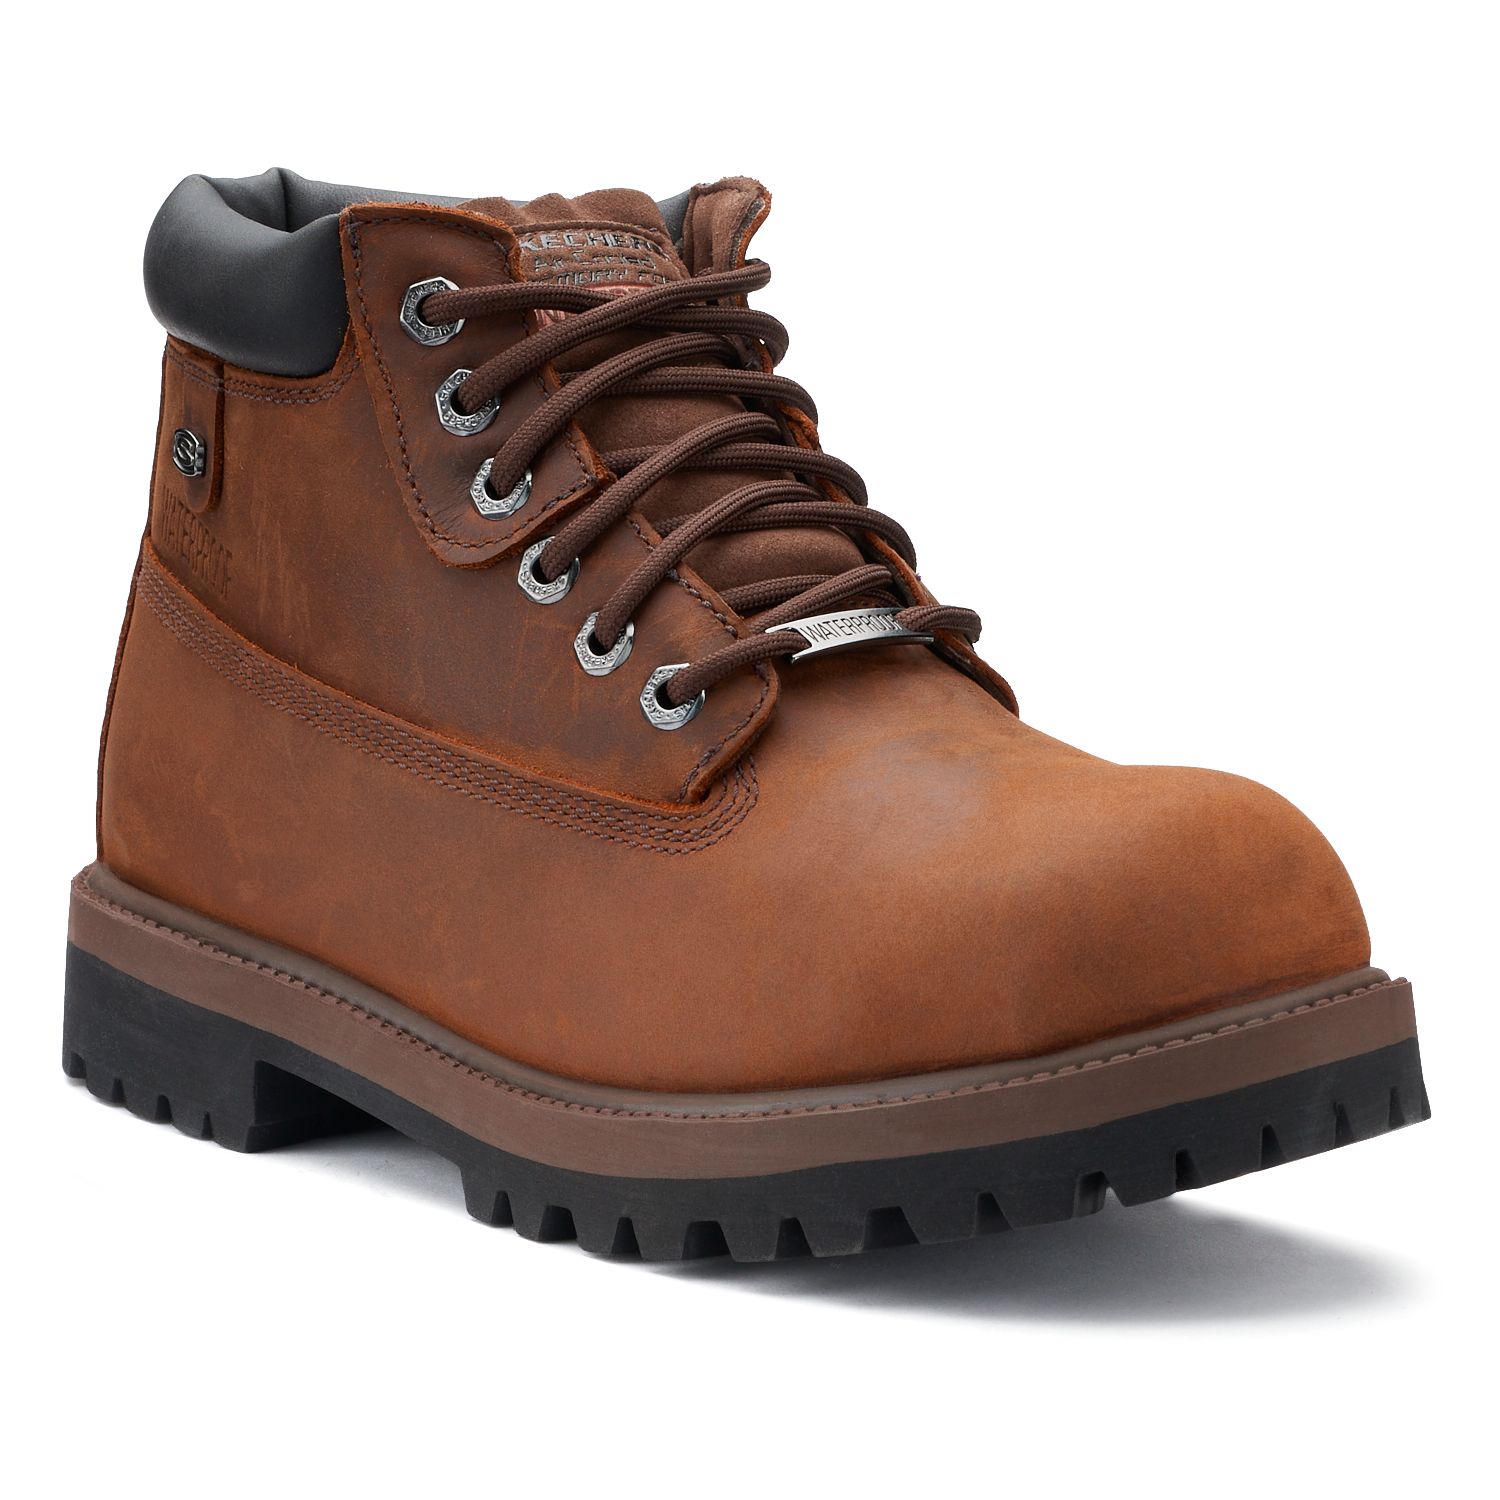 skechers verdict men's leather work boots